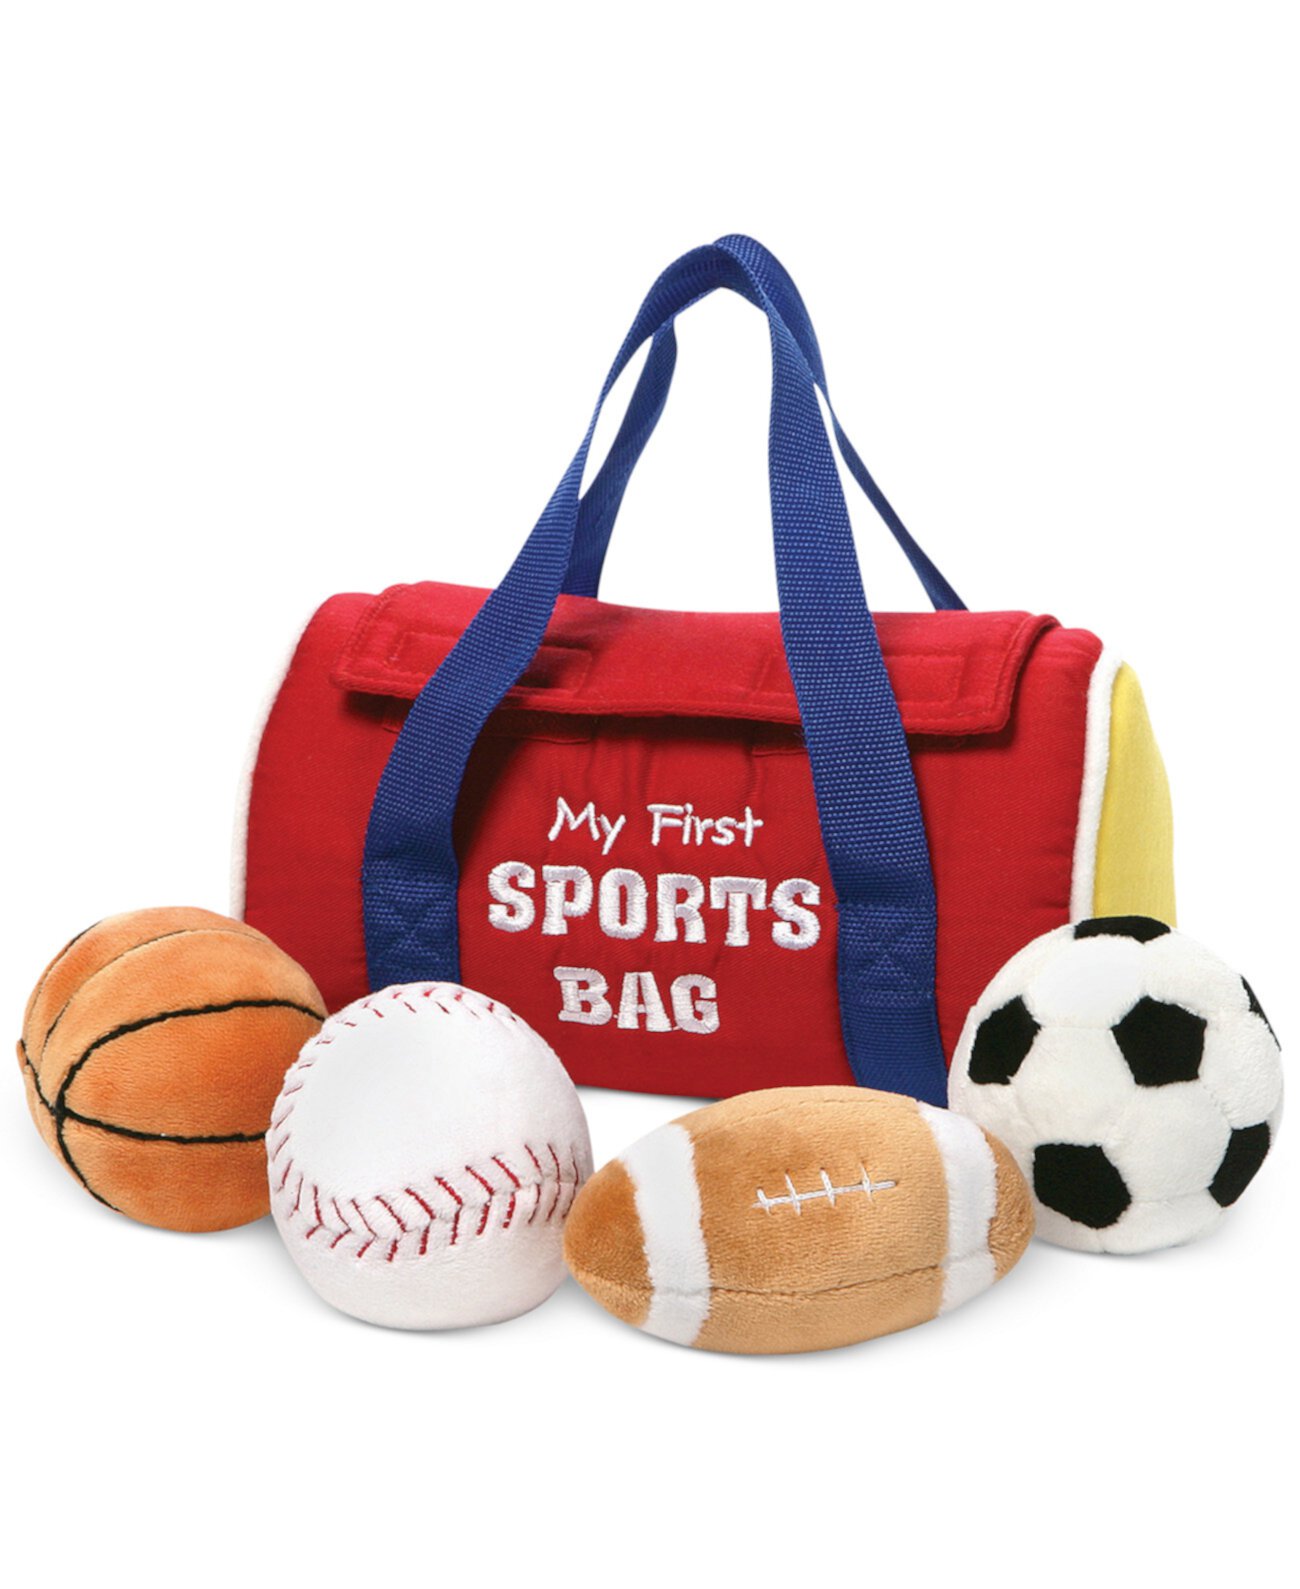 Baby My First Sports Bag Плюшевый игровой набор игрушек GUND